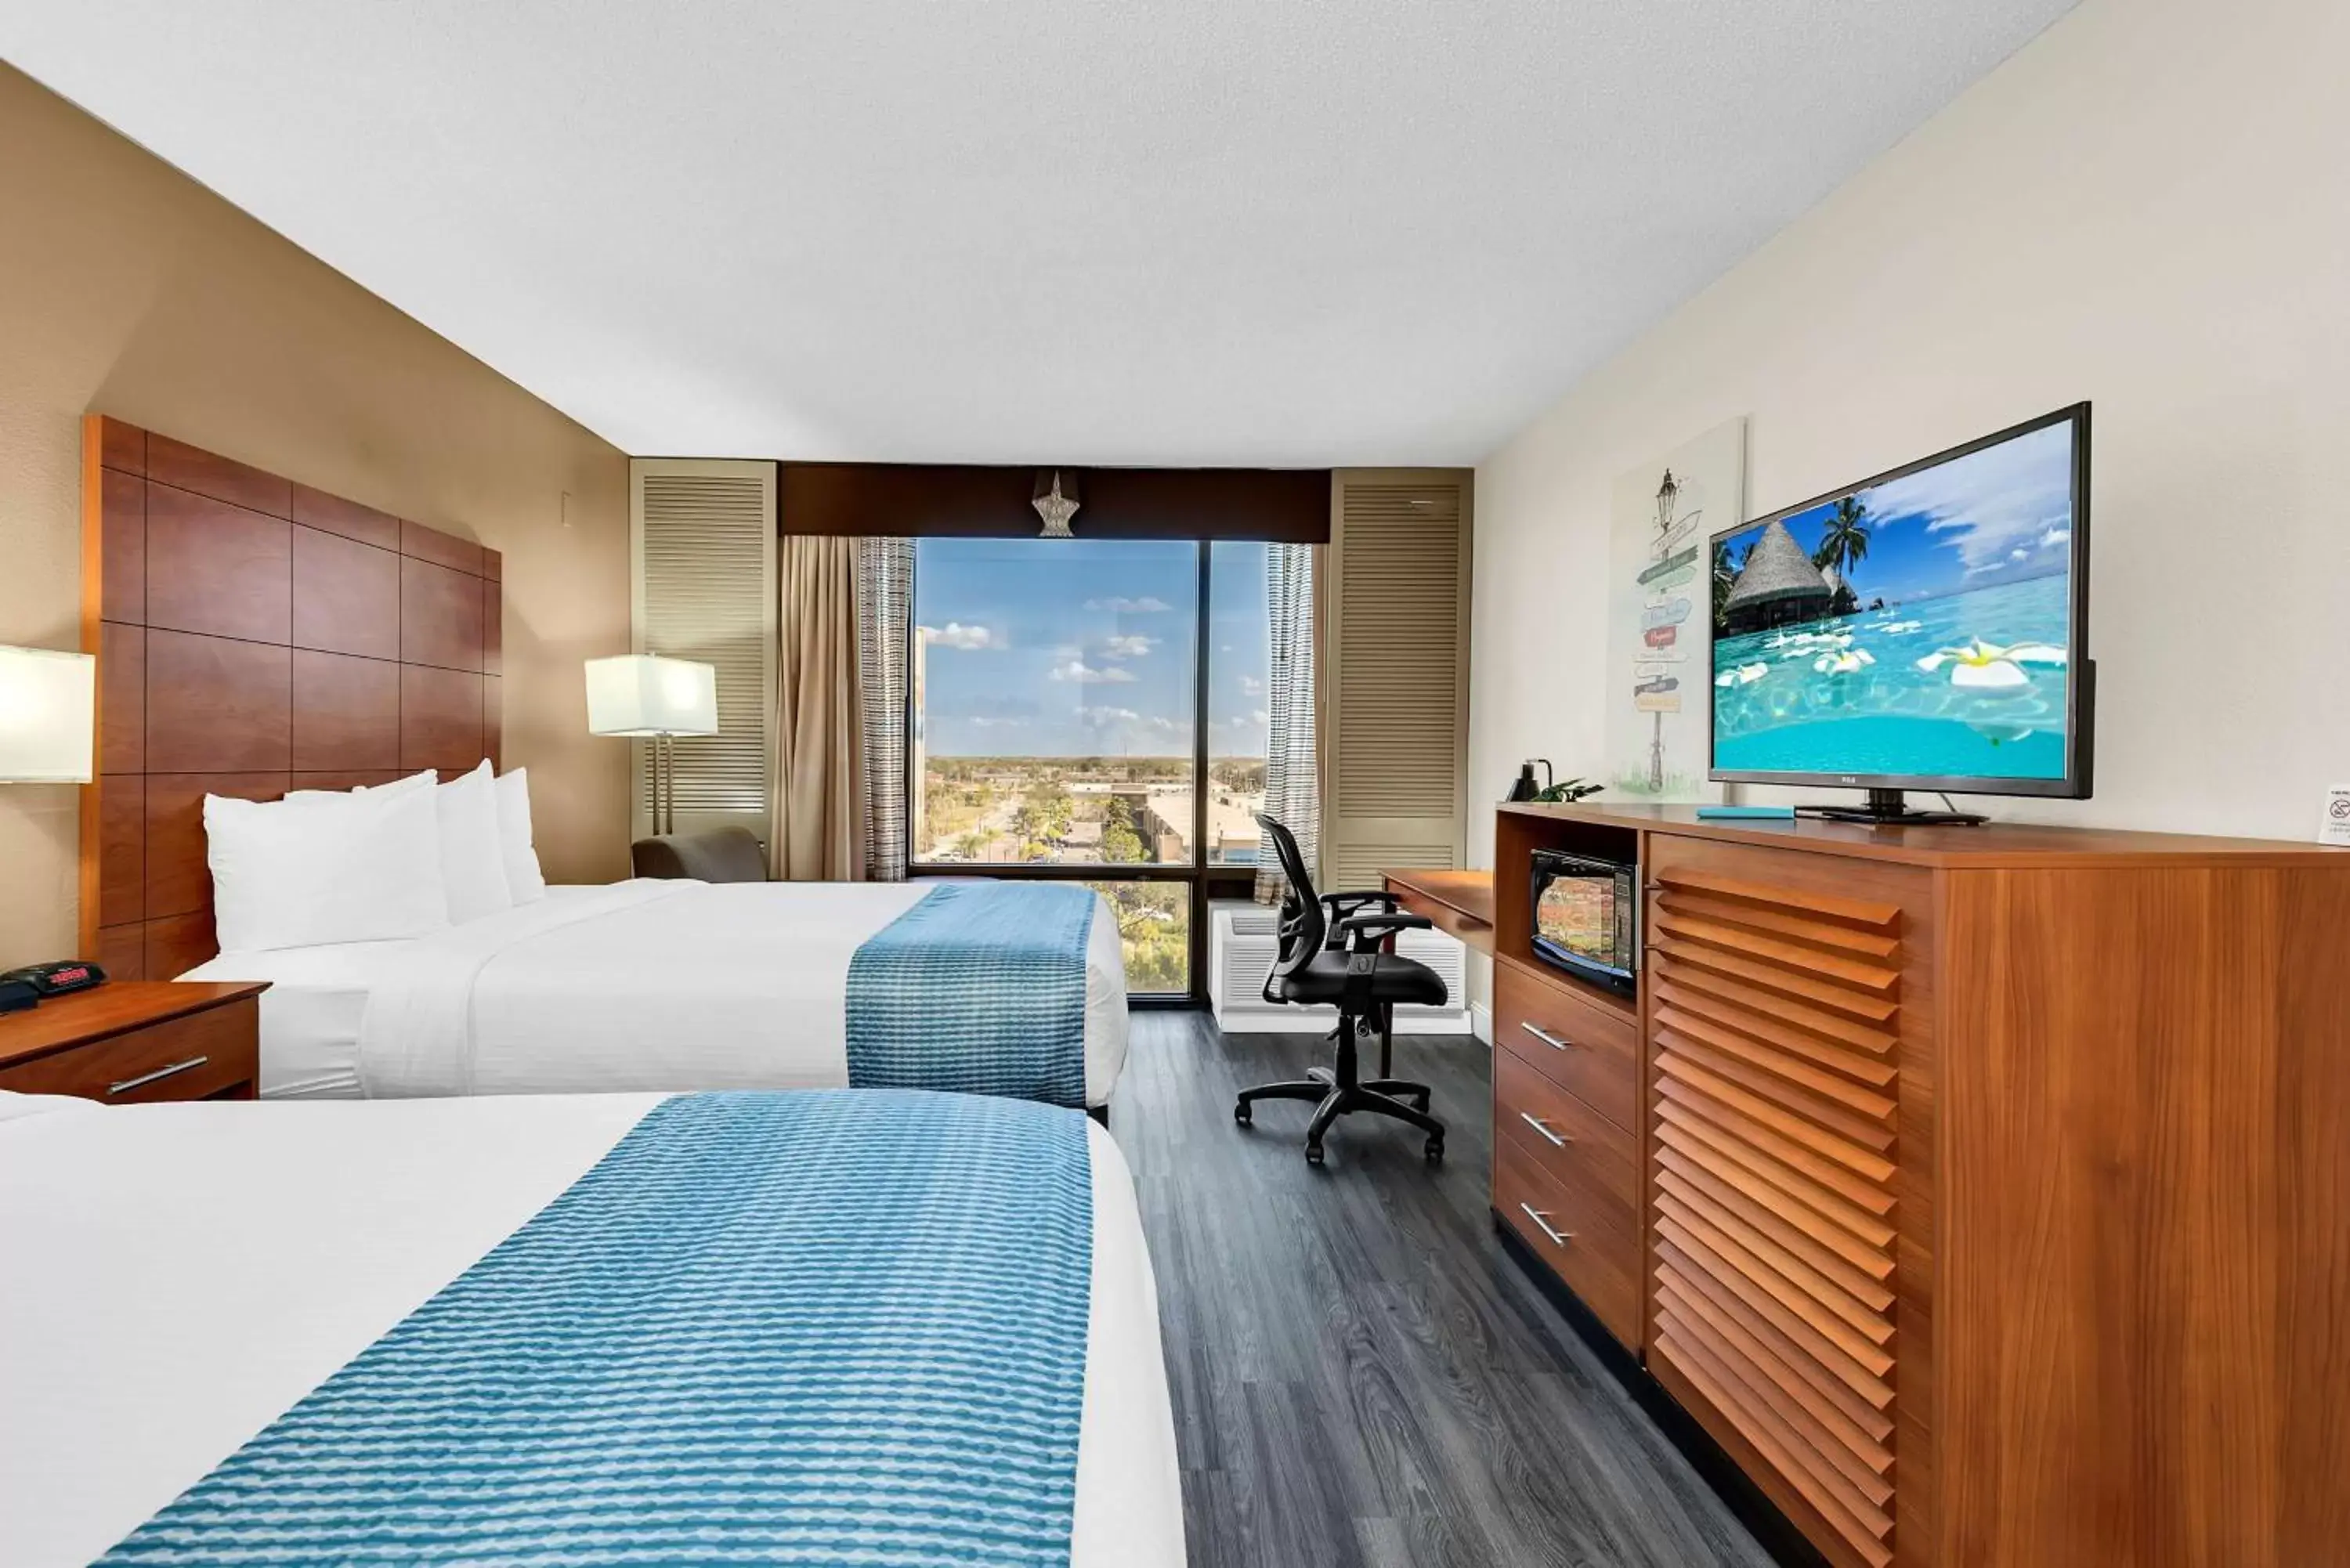 Bedroom, TV/Entertainment Center in Best Western Orlando Gateway Hotel